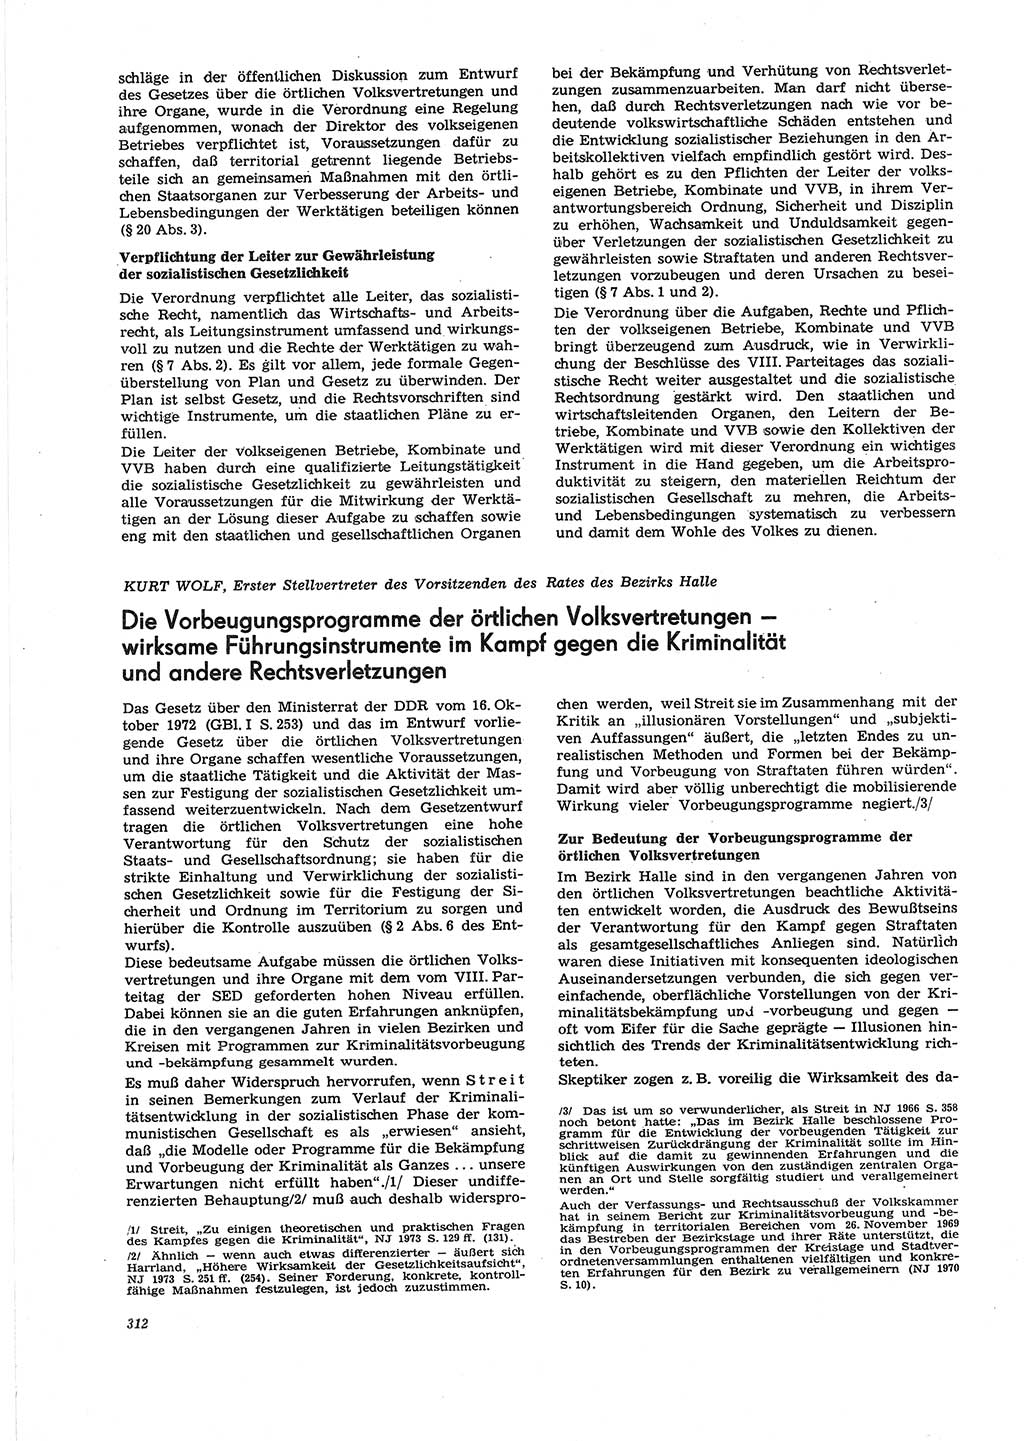 Neue Justiz (NJ), Zeitschrift für Recht und Rechtswissenschaft [Deutsche Demokratische Republik (DDR)], 27. Jahrgang 1973, Seite 312 (NJ DDR 1973, S. 312)